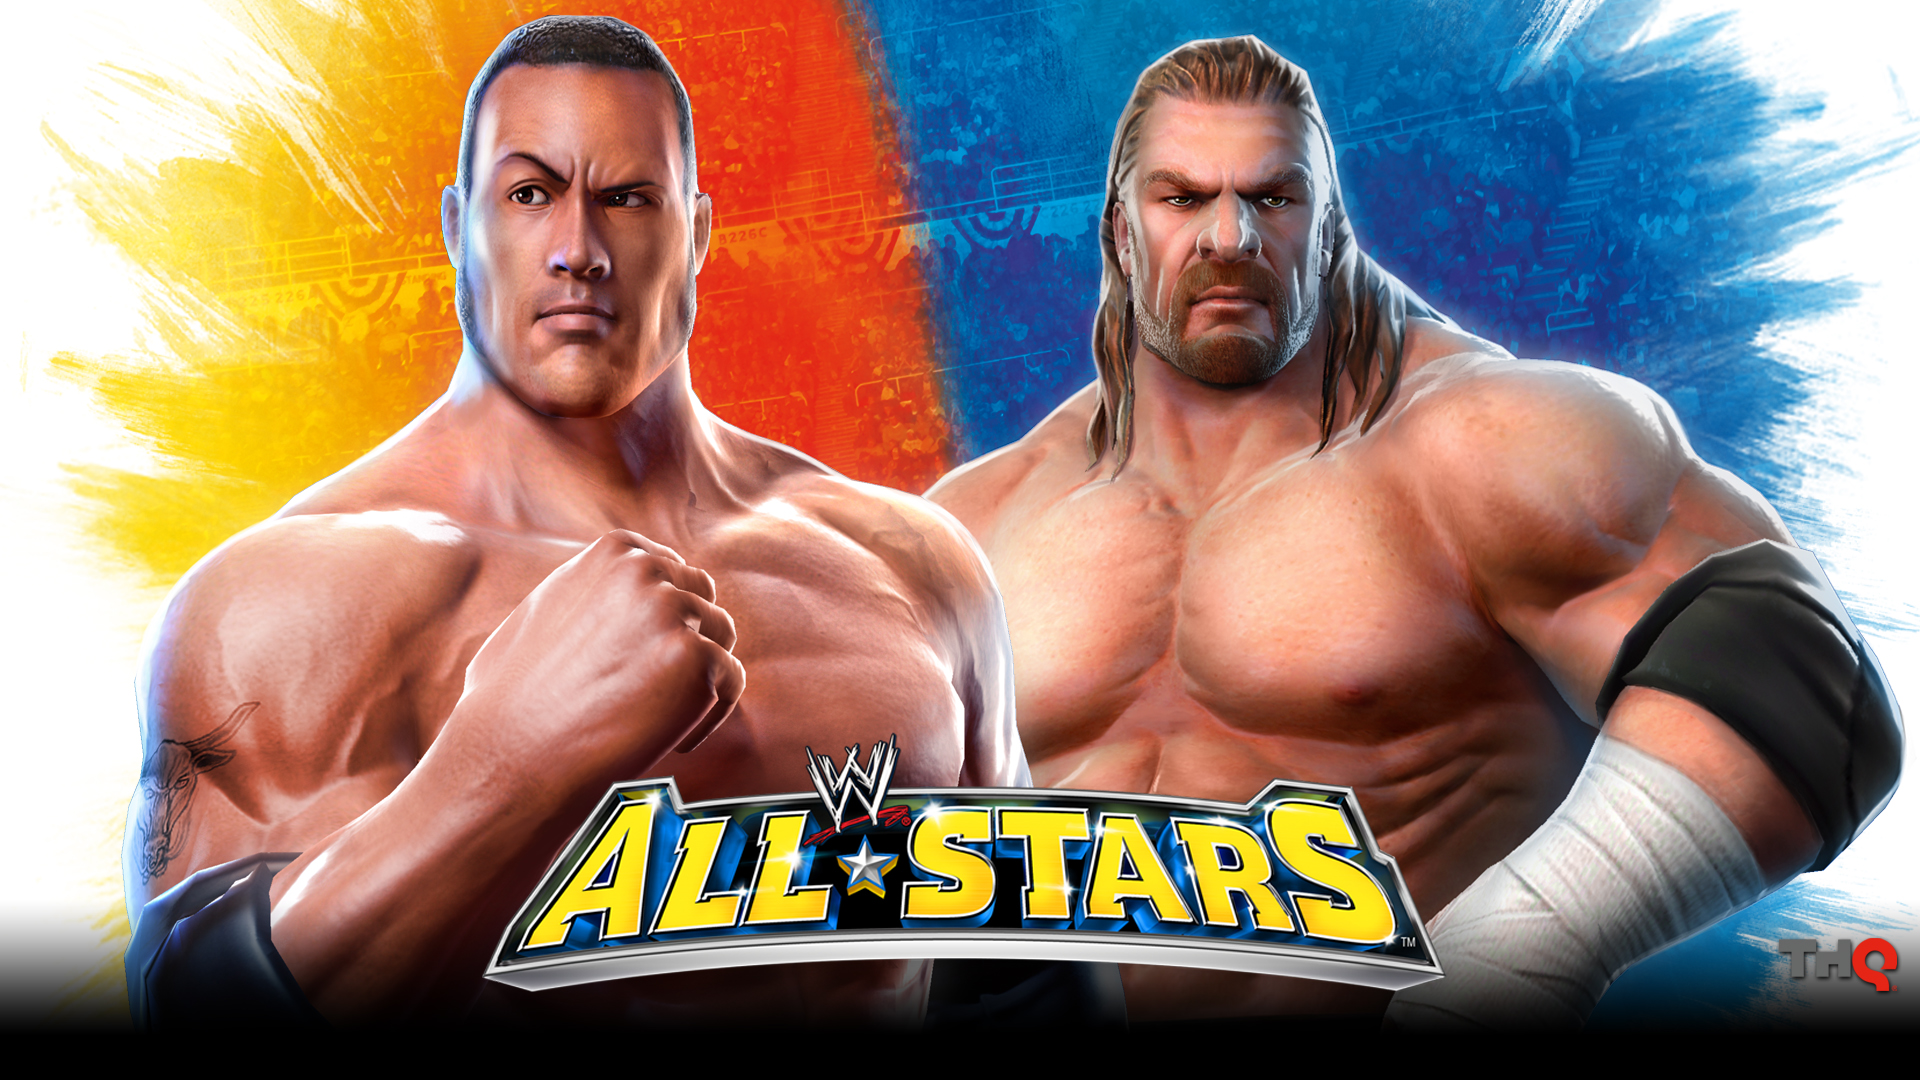 WWE All Stars HD Wallpaper